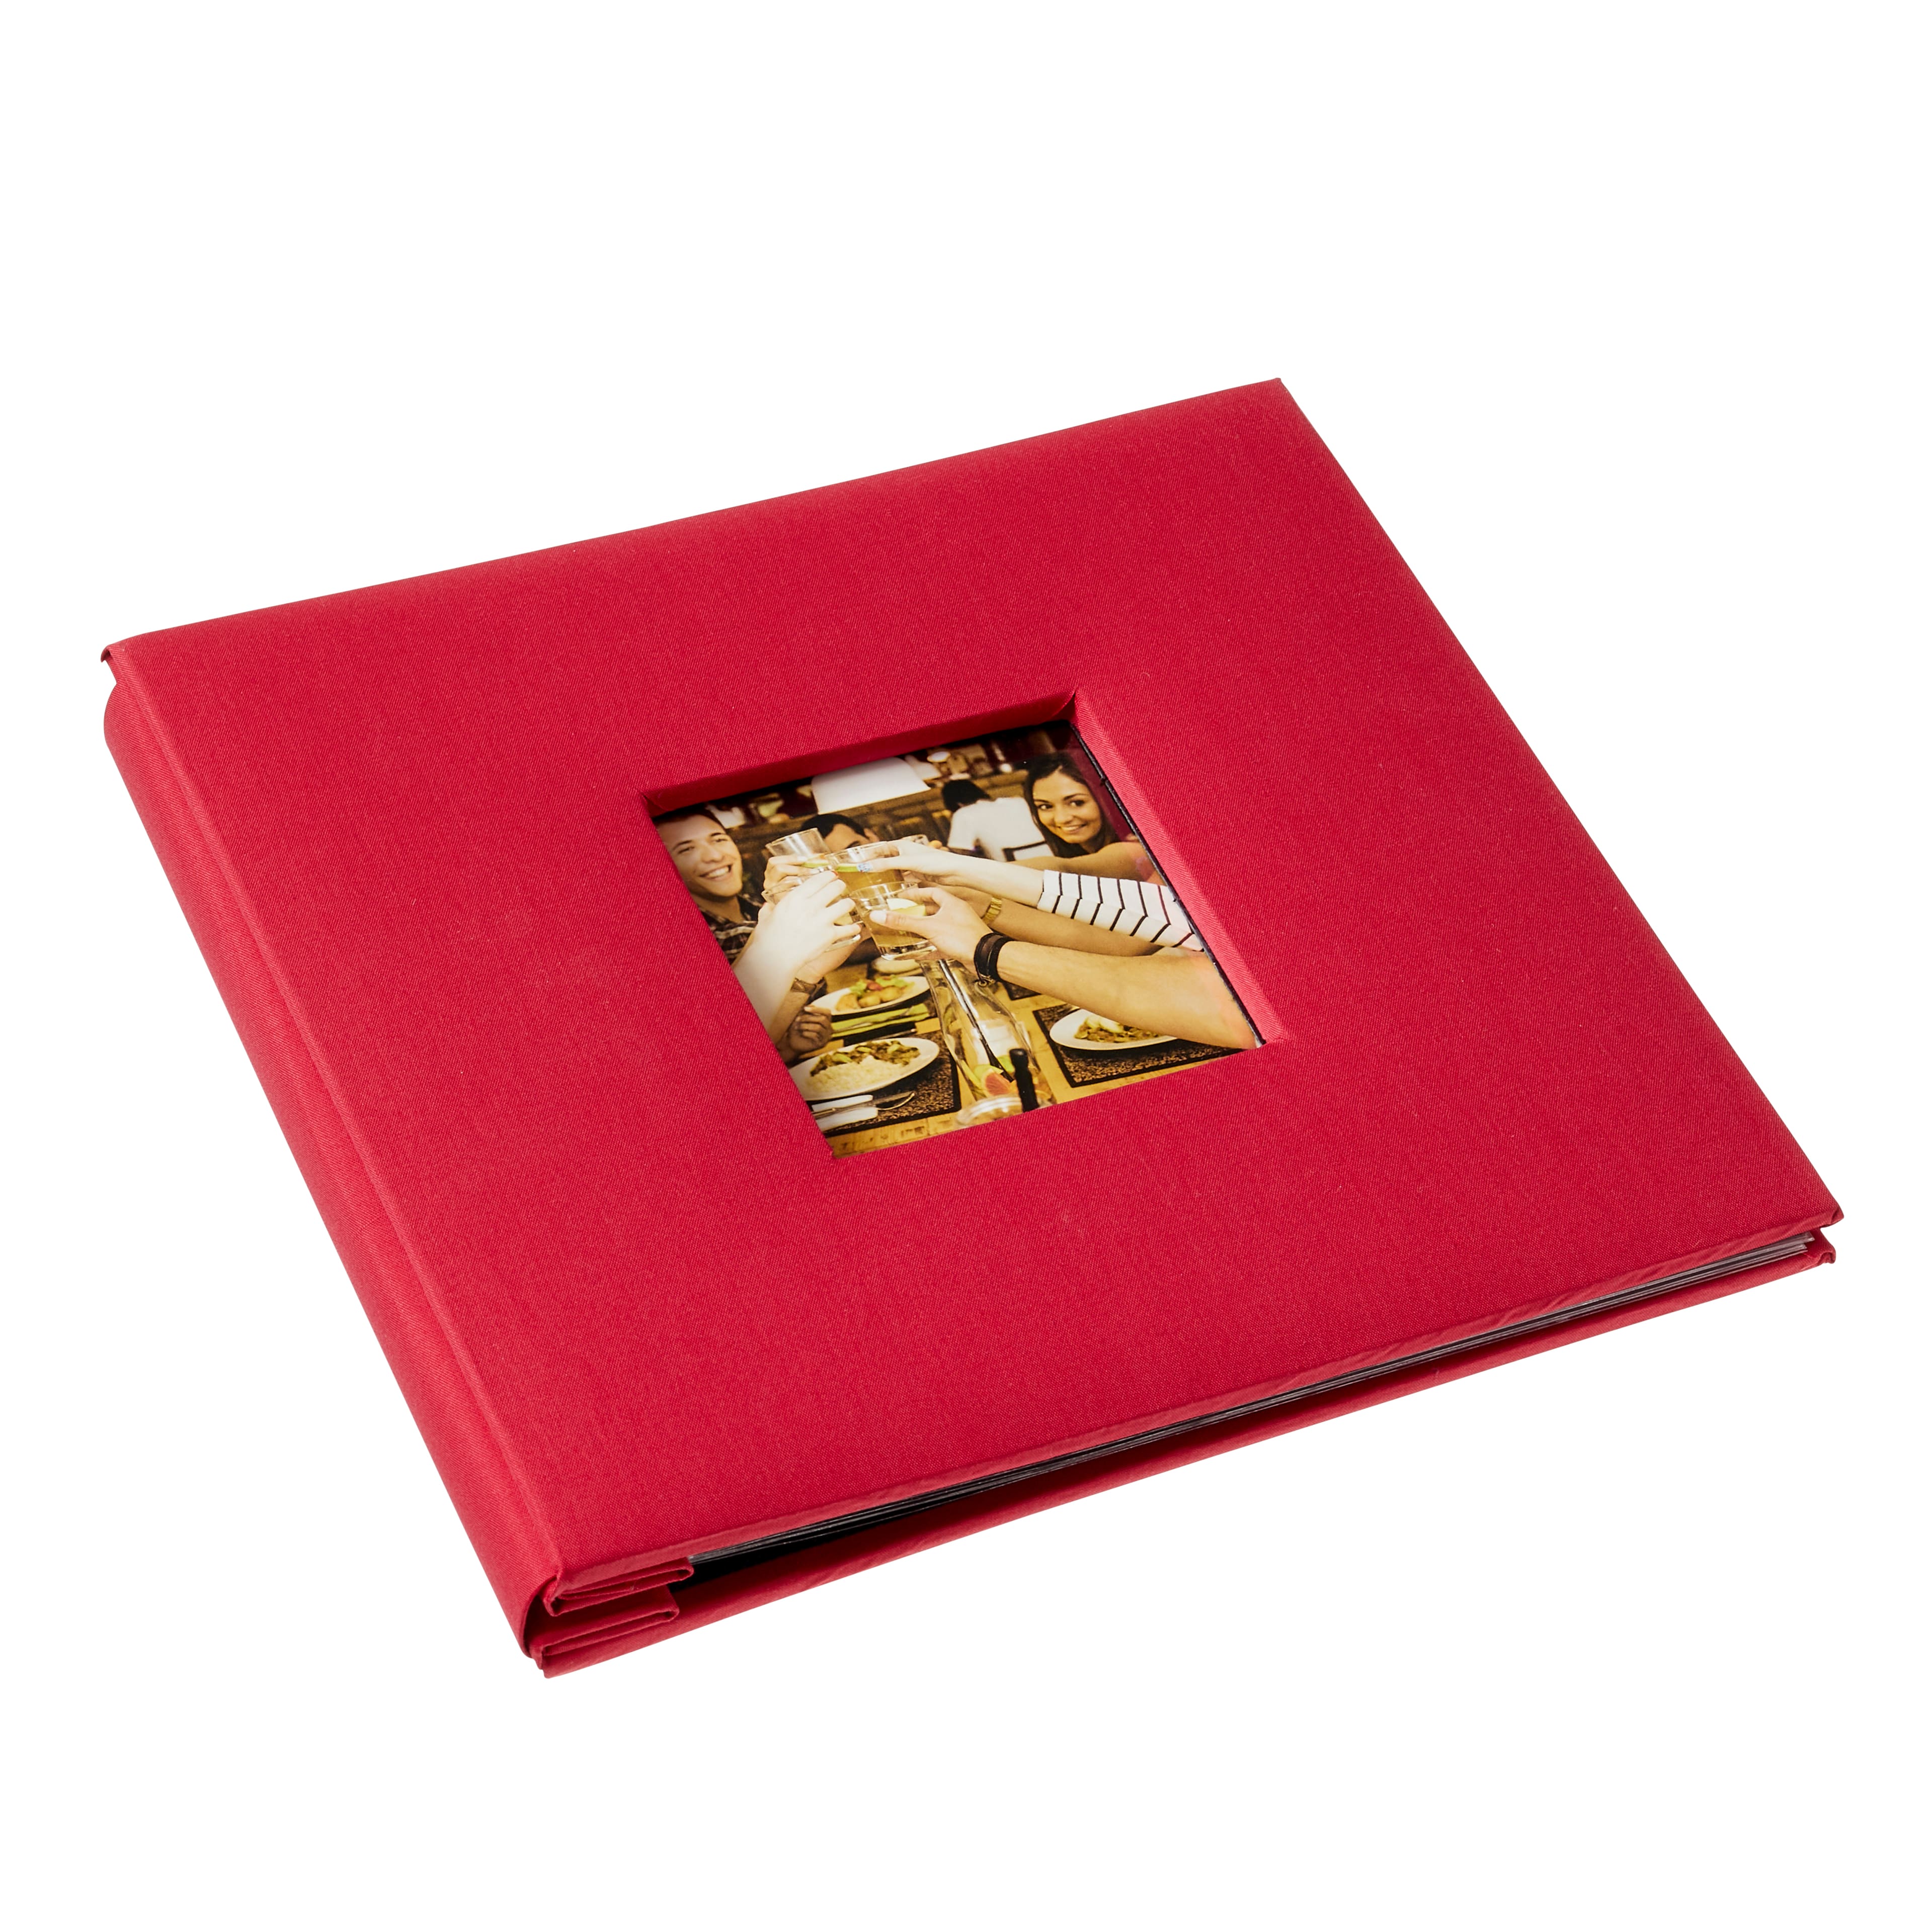 Portfolio Gifted Memories 8x8” SCRAPBOOK Album – Scrapbooksrus